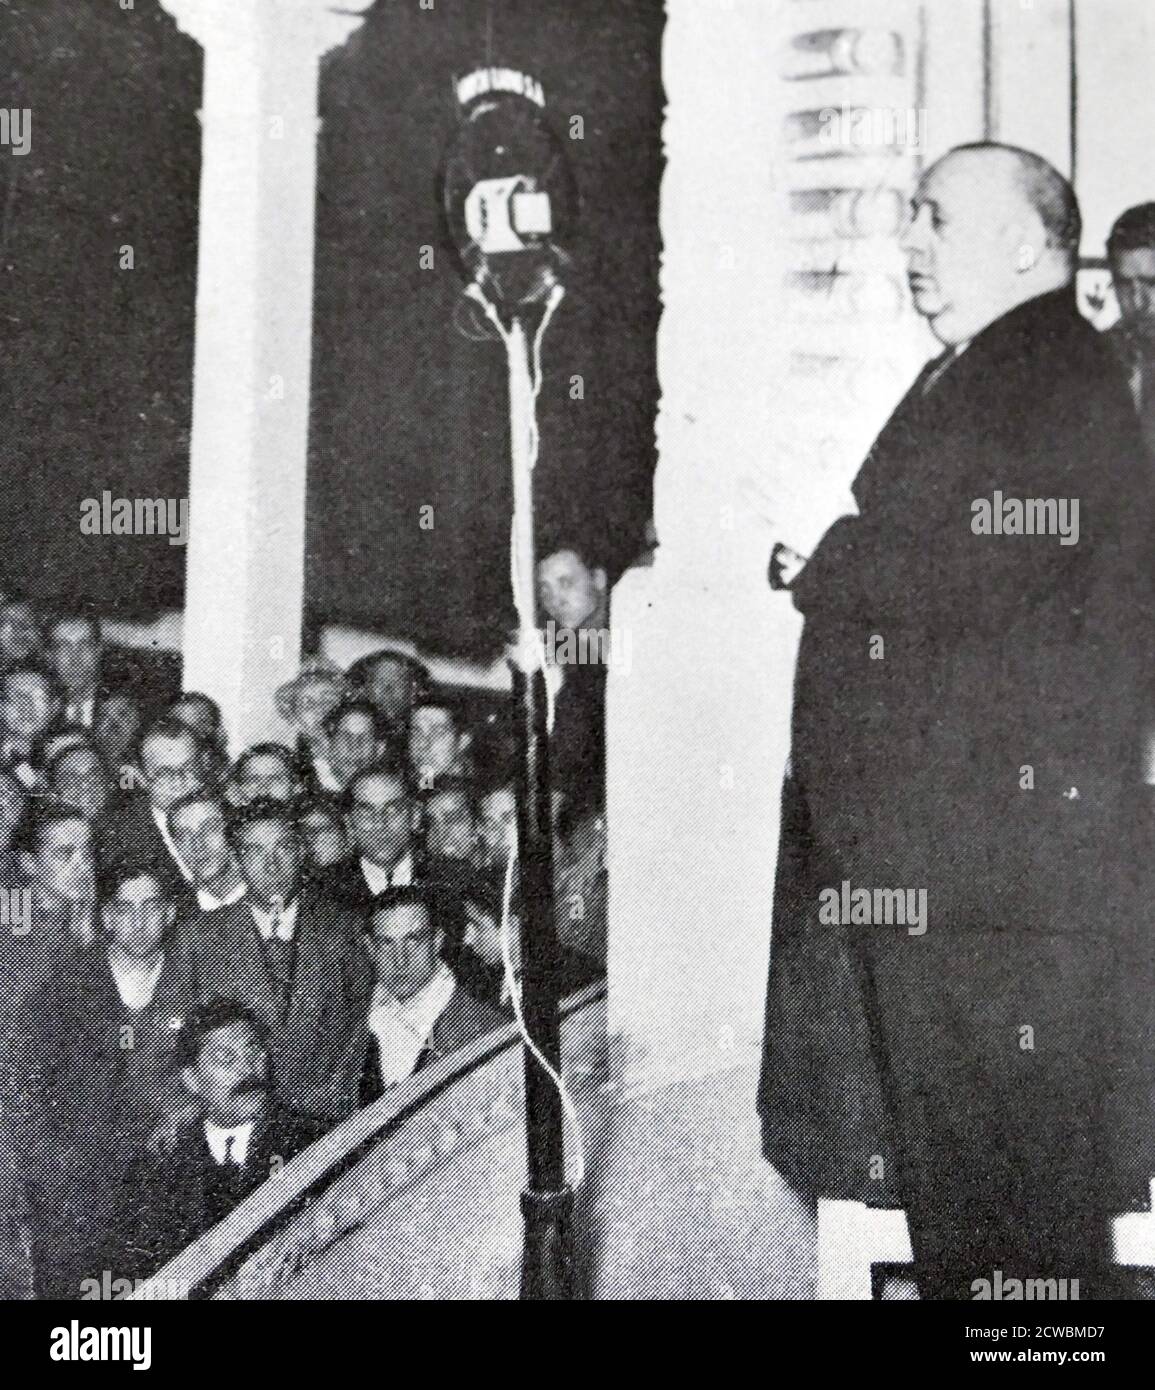 Fotografia in bianco e nero di Indalecio Prieto (1883-1962), politico repubblicano spagnolo, che ha pronunciato un discorso dopo la vittoria del fronte popolare. Foto Stock